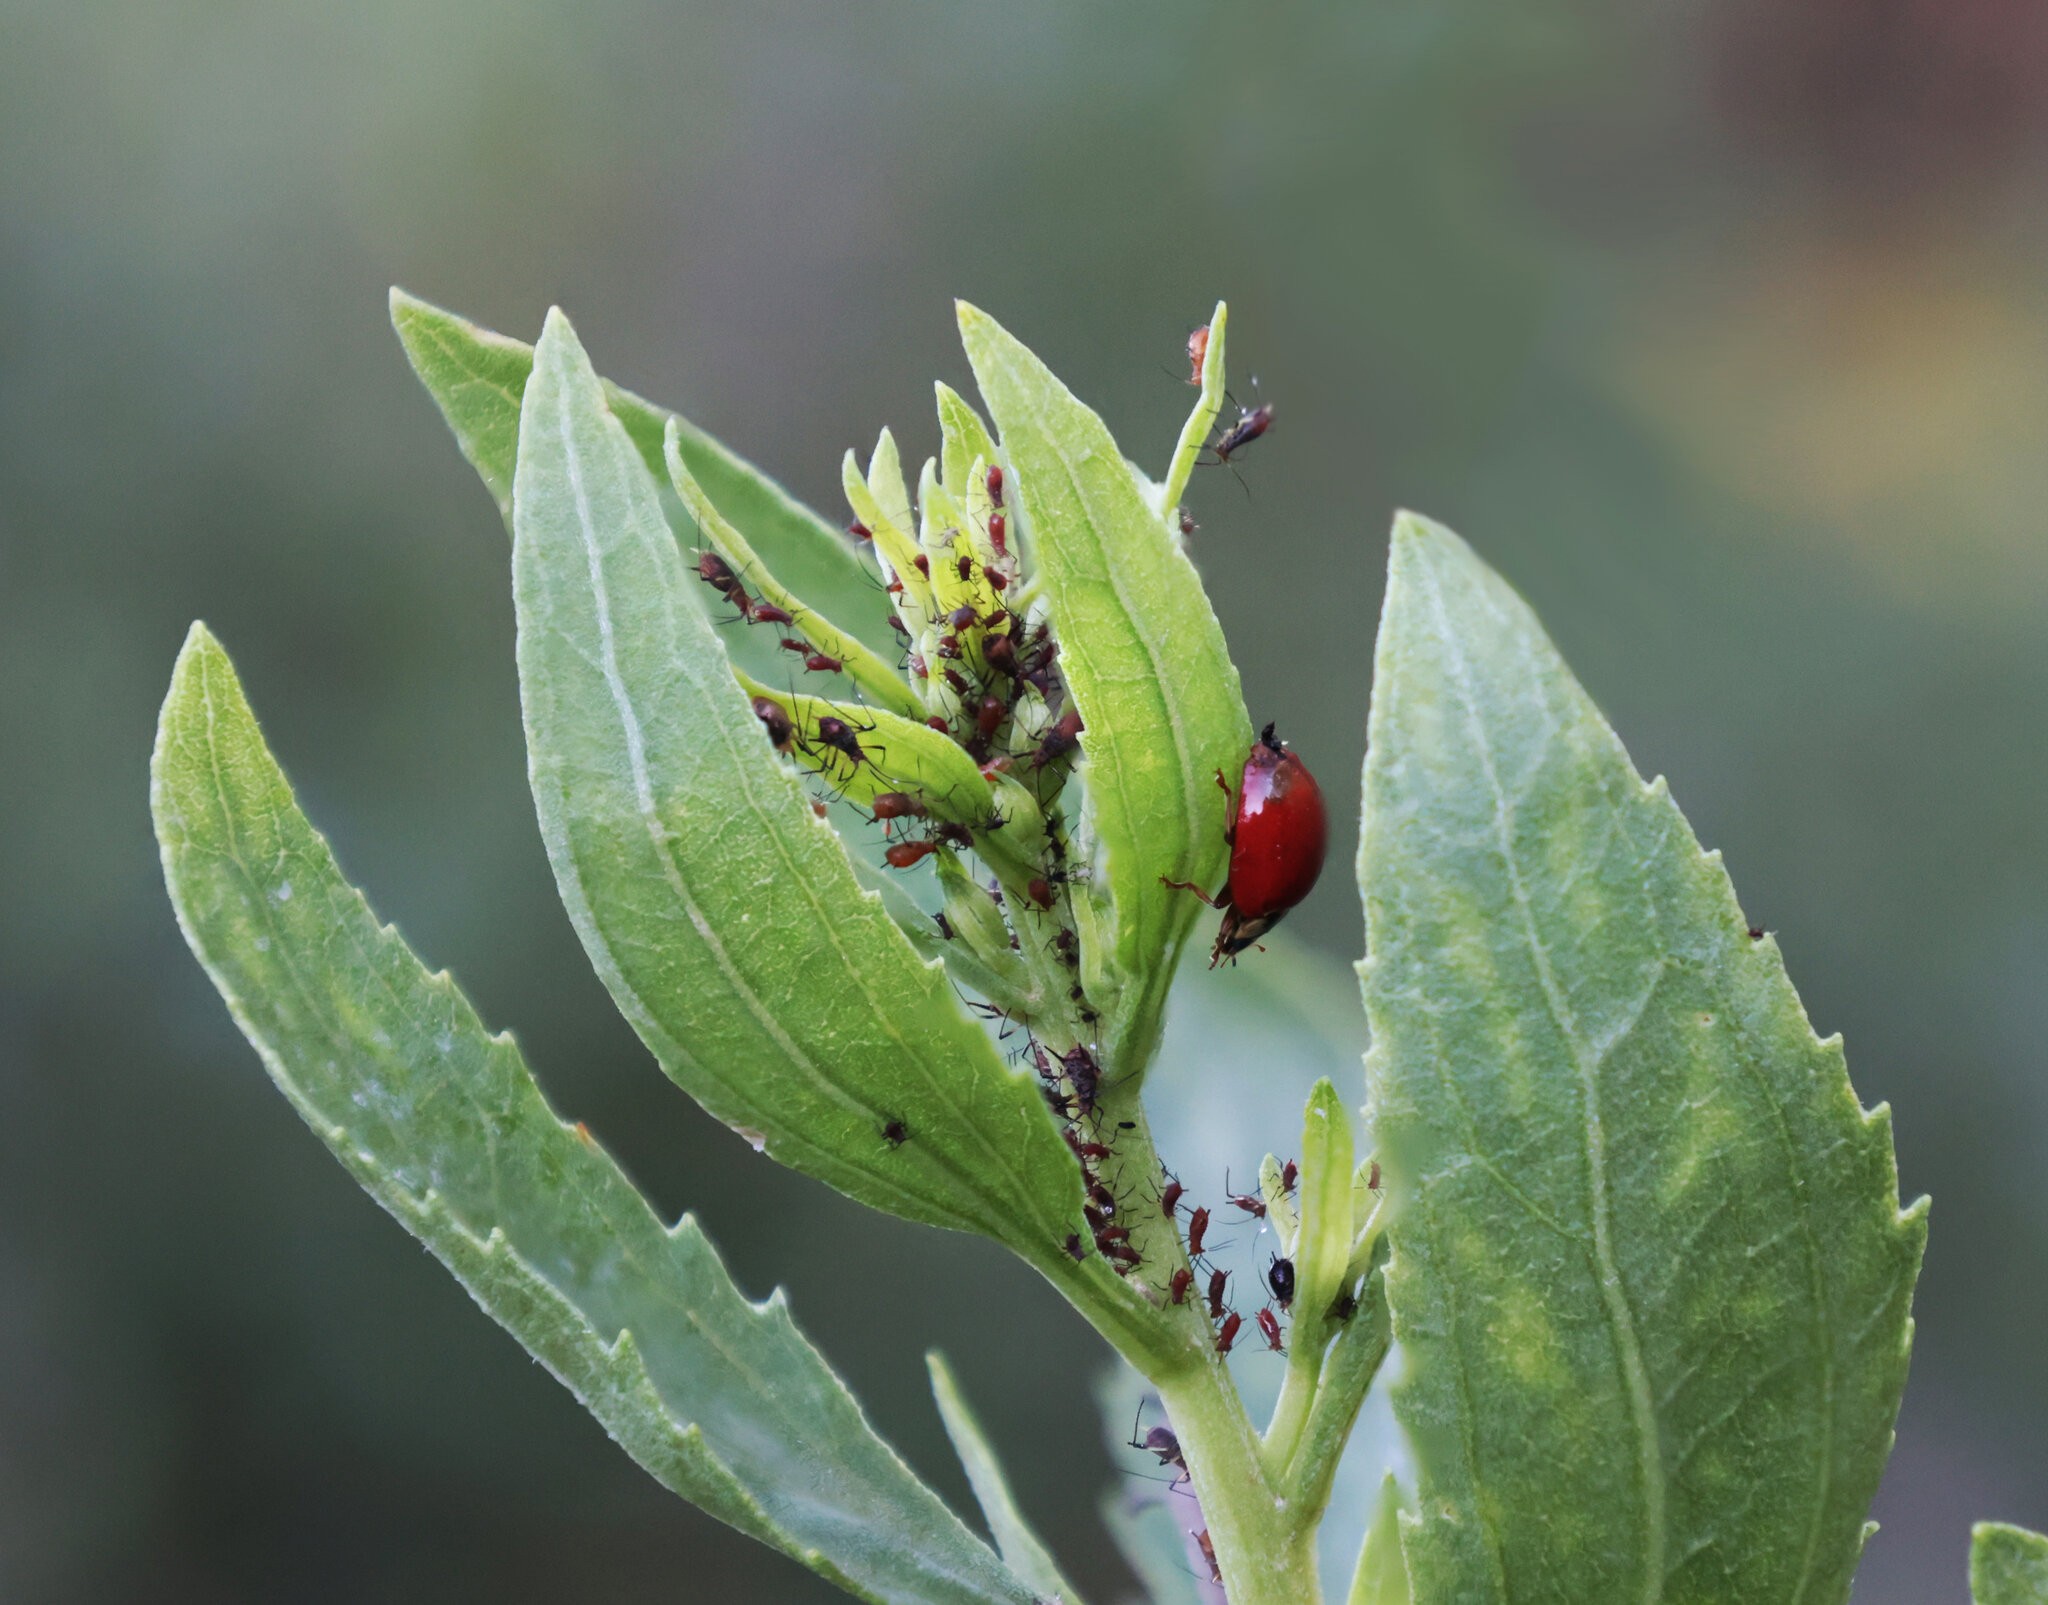 Ladybug_and_aphids_B.jpg